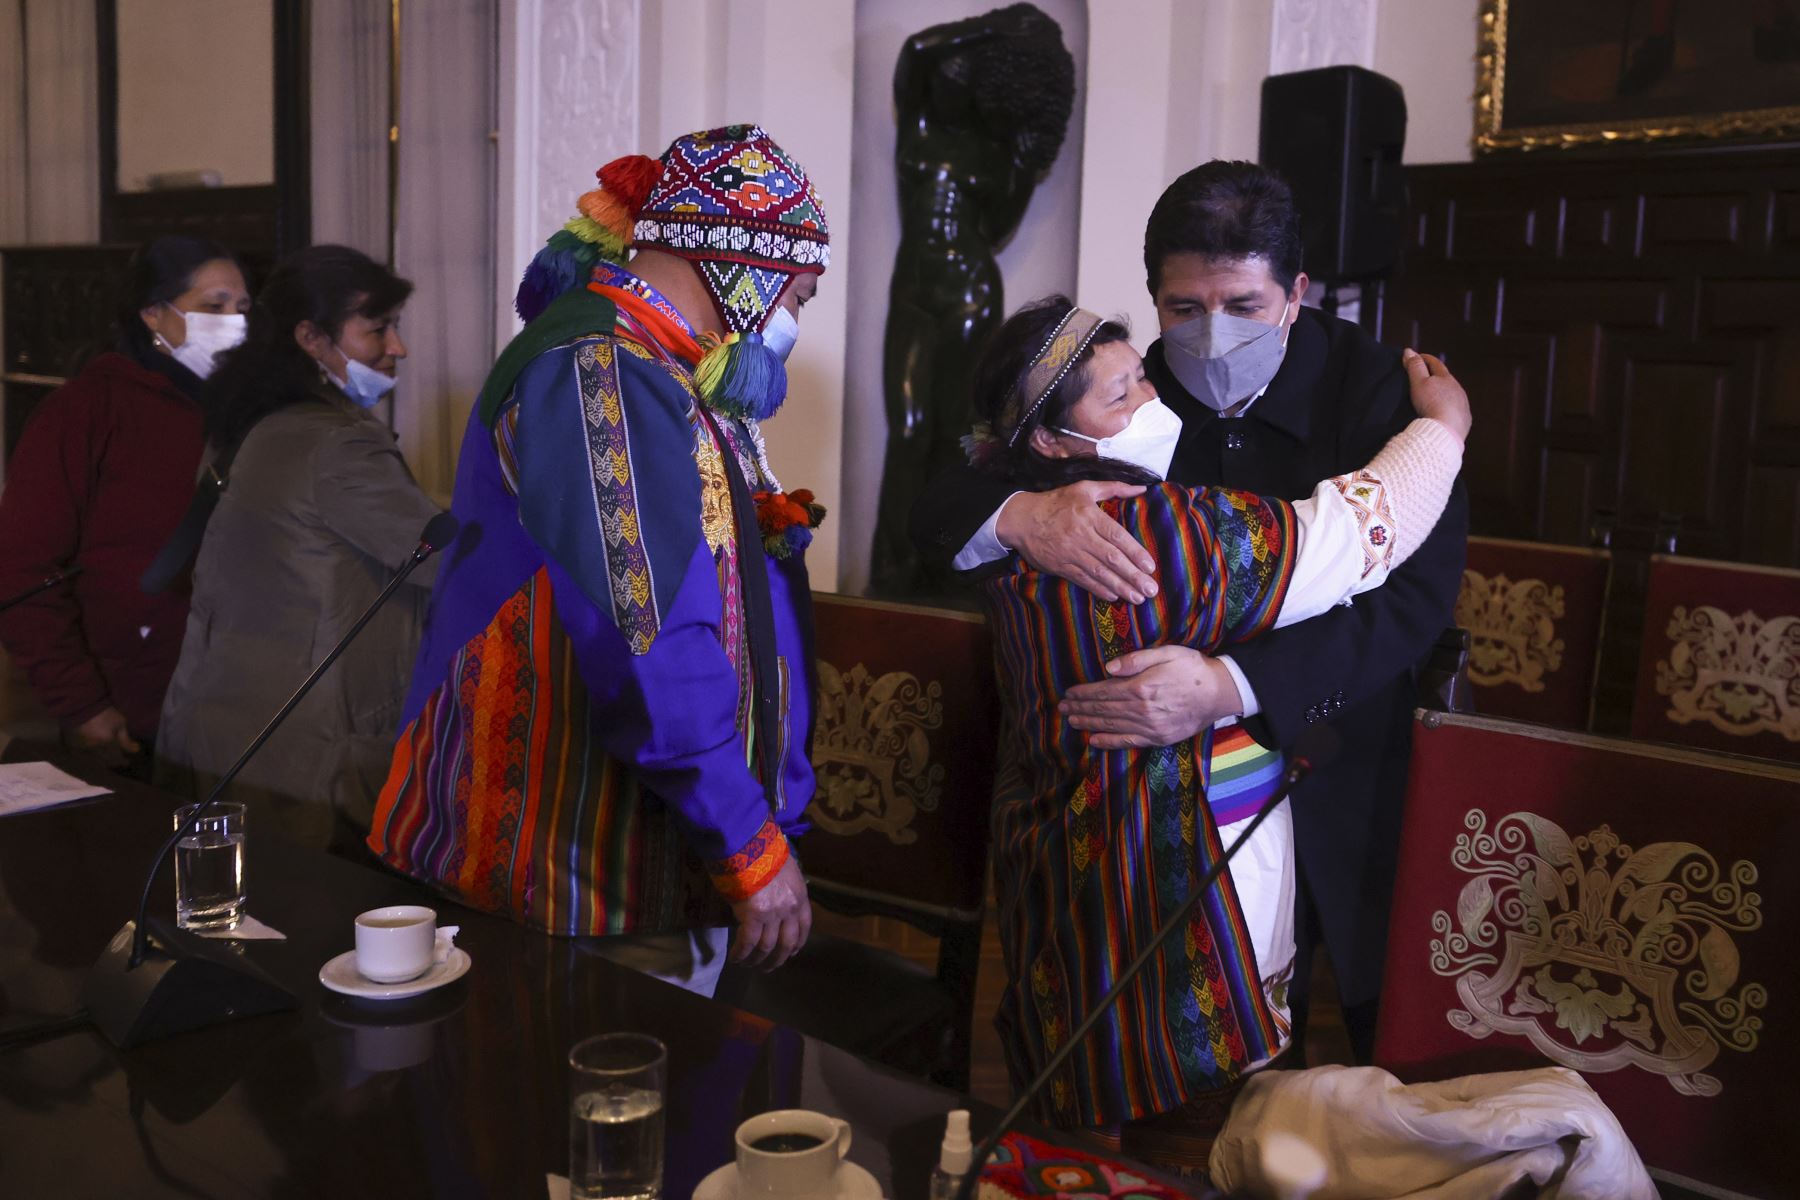 El presidente de la República, Pedro Castillo, sostuvo una reunión con líderes de pueblos originarios en Palacio de Gobierno. Foto: ANDINA/Prensa Presidencia